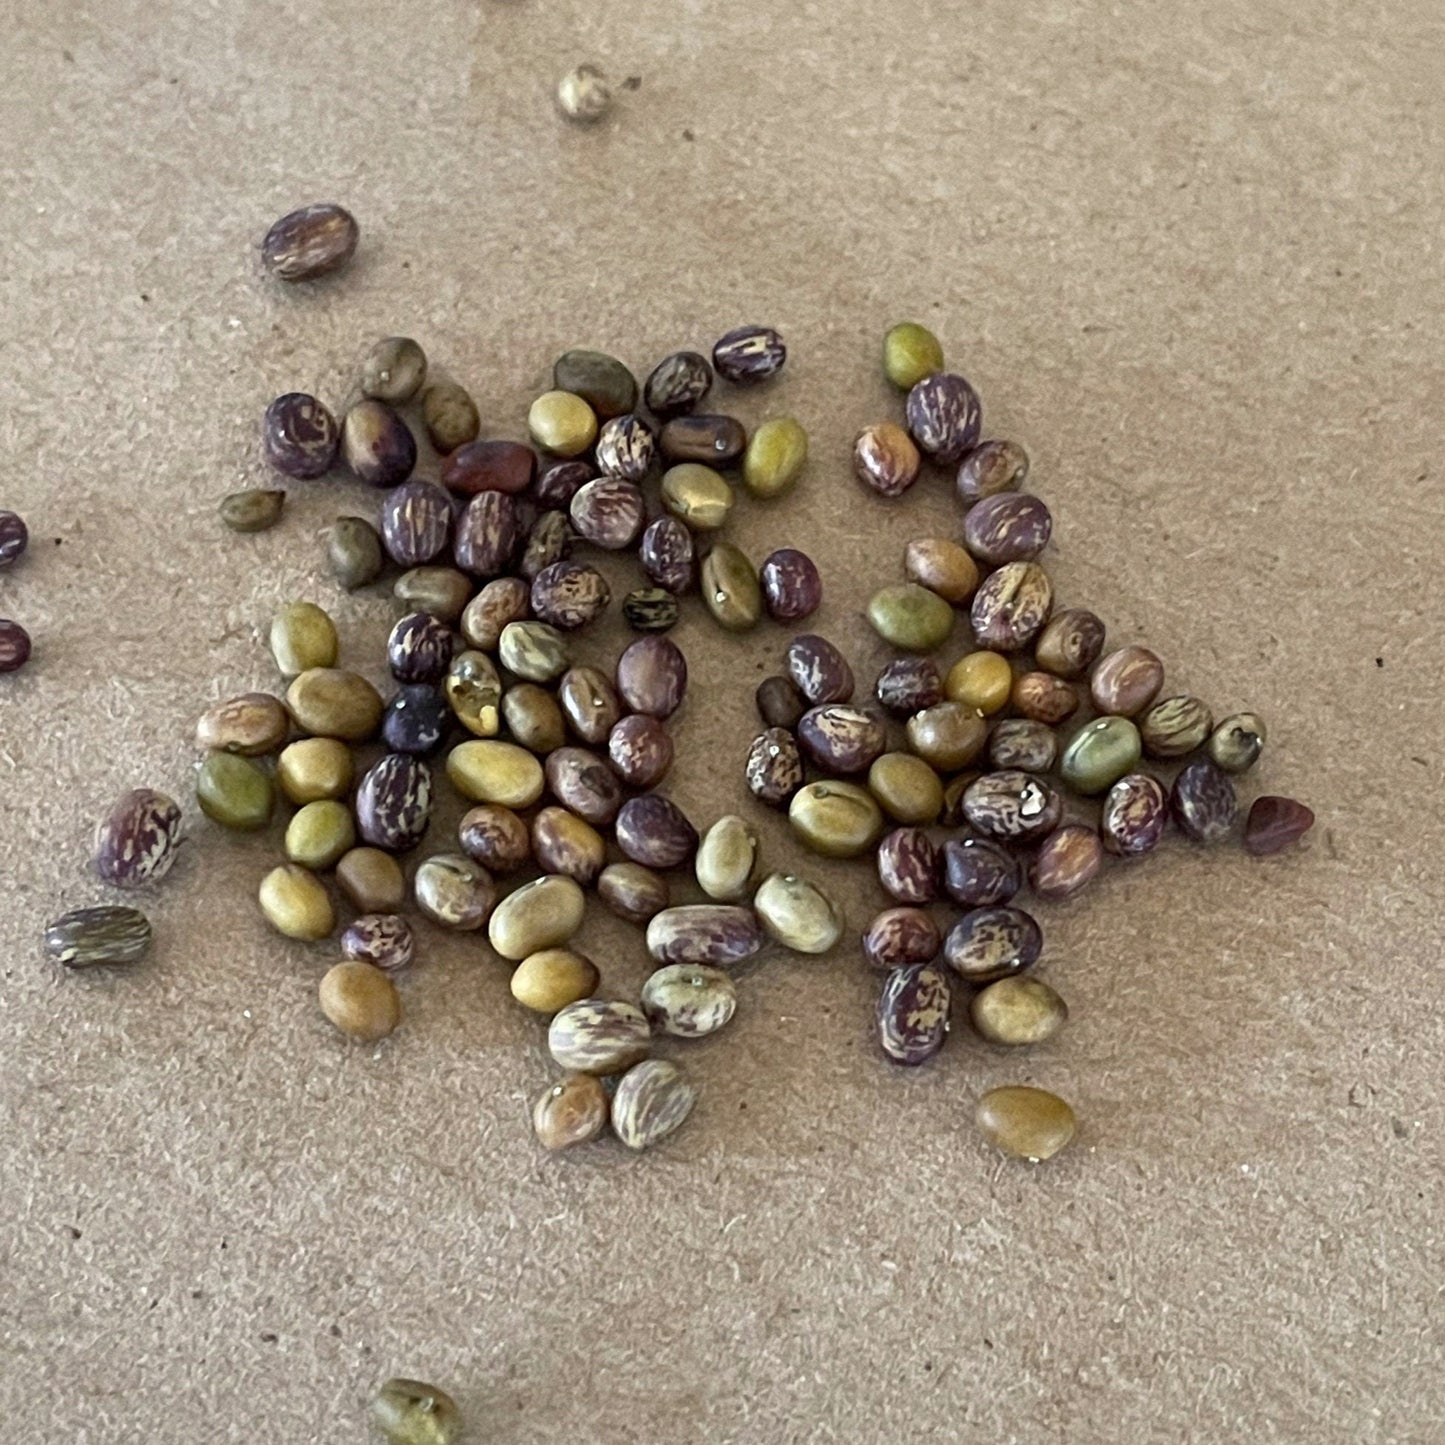 Caragana Seeds (Caragana arborescens, Siberian Peashrub) - 75+ Seeds